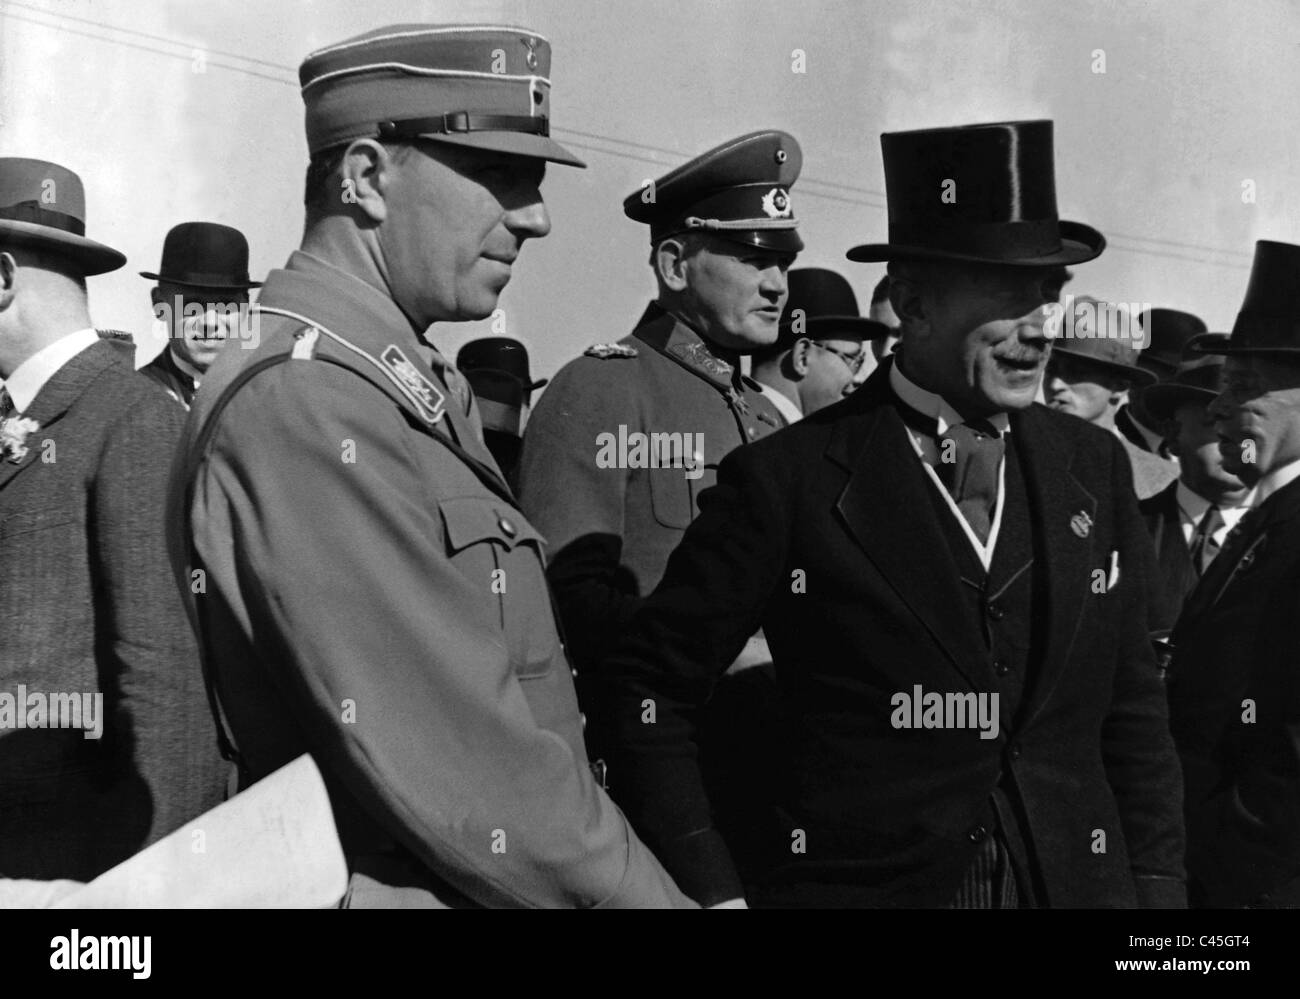 Wolf Heinrich Graf von Helldorf, Werner von Blomberg and Franz von Papen, around 1933 Stock Photo